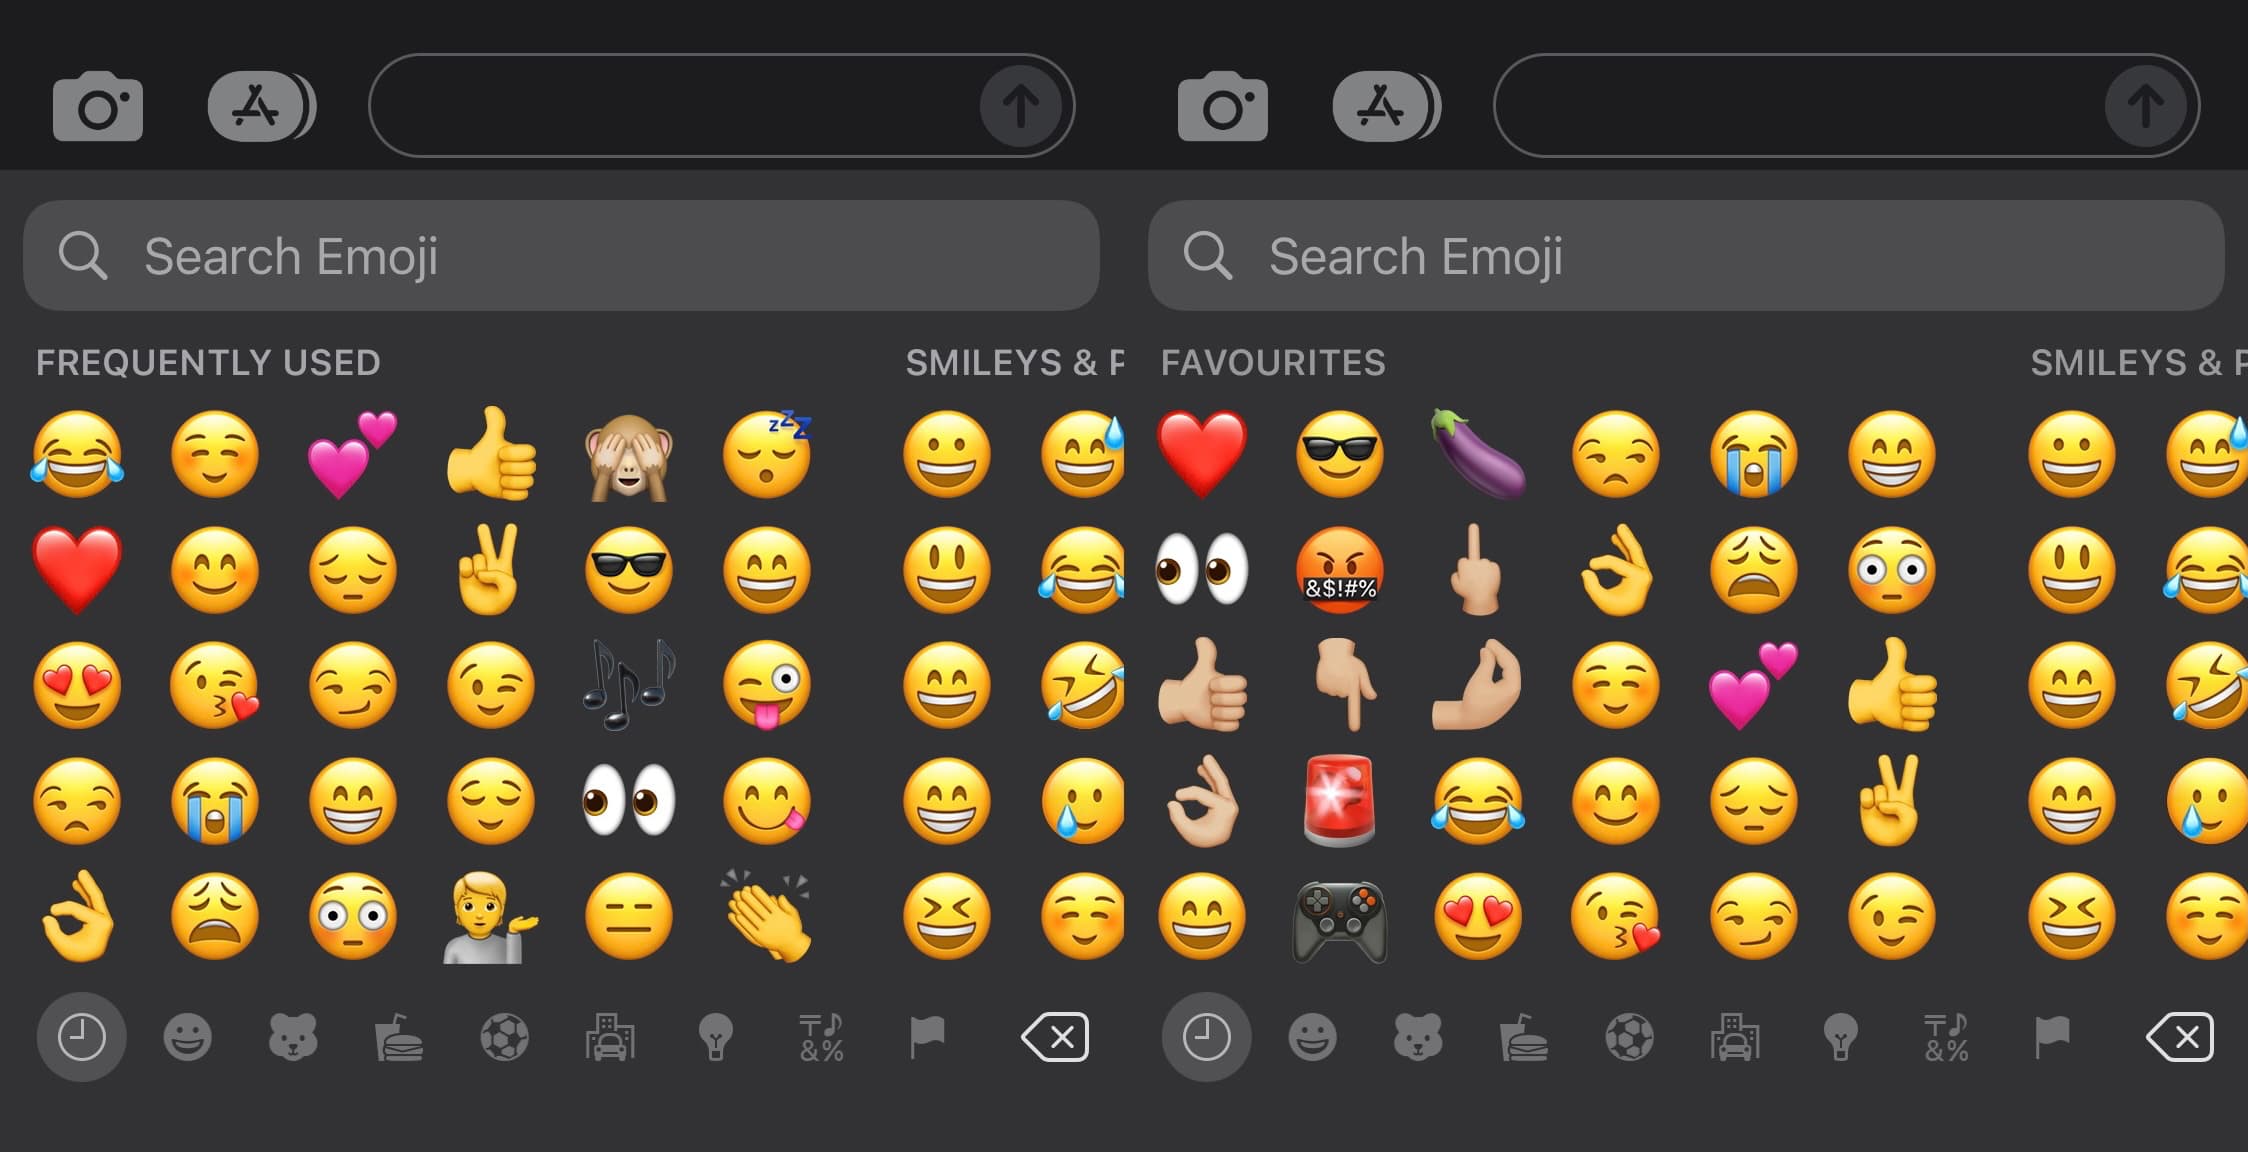 Favemoji lets you choose what Emojis the Emoji keyboard suggests as ‘favorites’